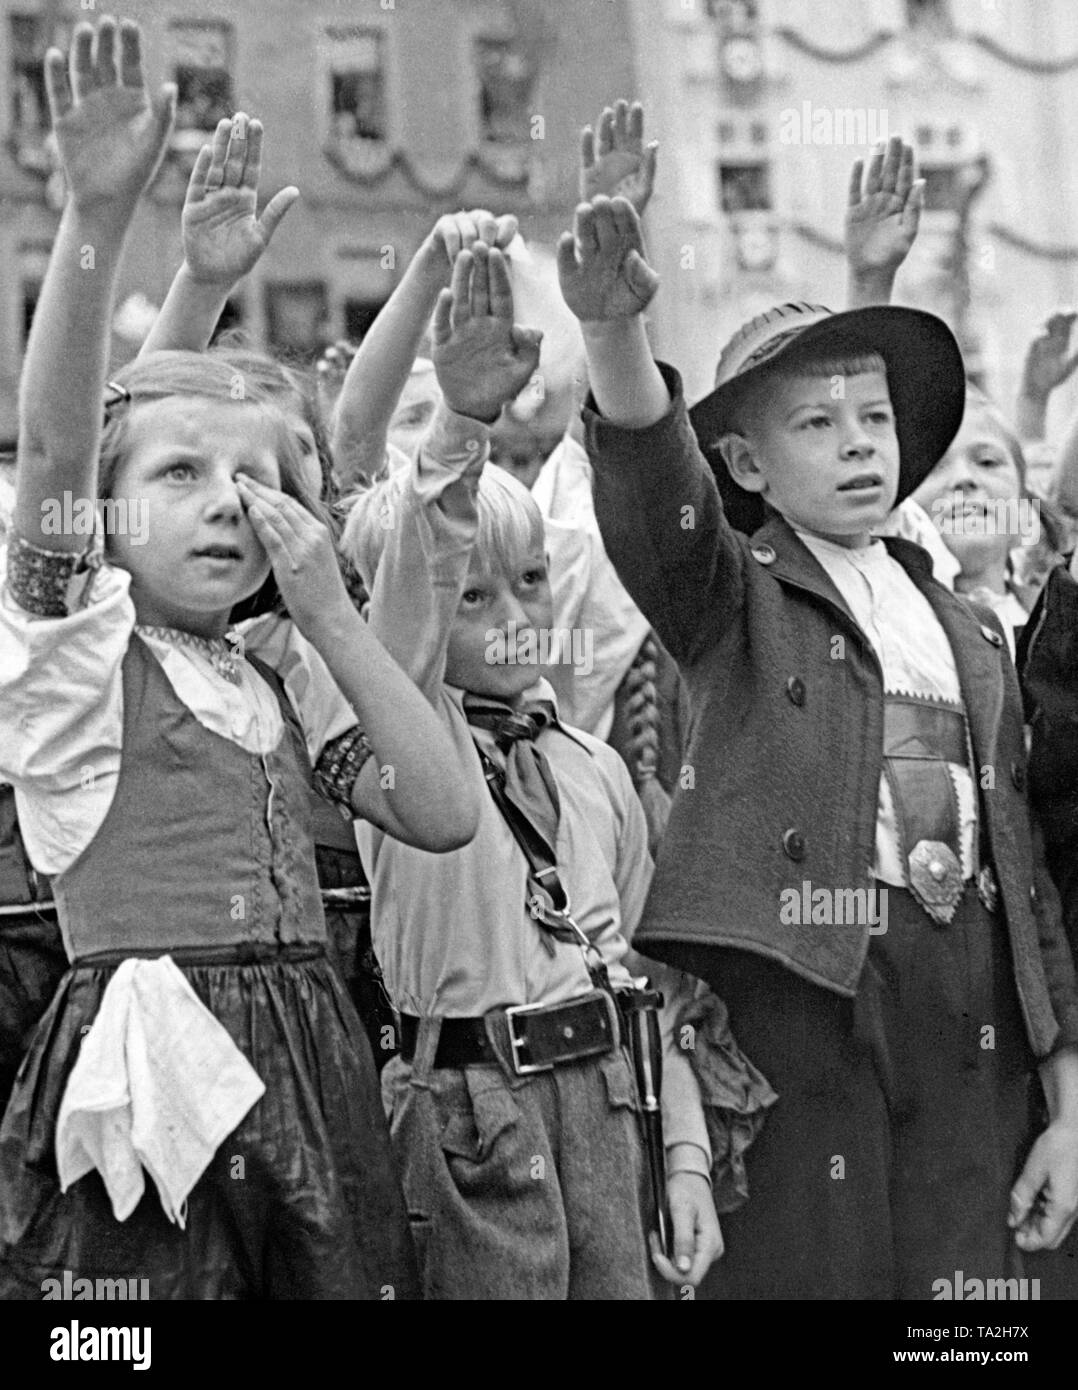 Eine Gruppe von Kindern geben Adolf Hitler den Hitlergruß am 3. Oktober 1938, bei seinem Besuch in Cheb während der Besetzung des Sudetenlandes. Stockfoto